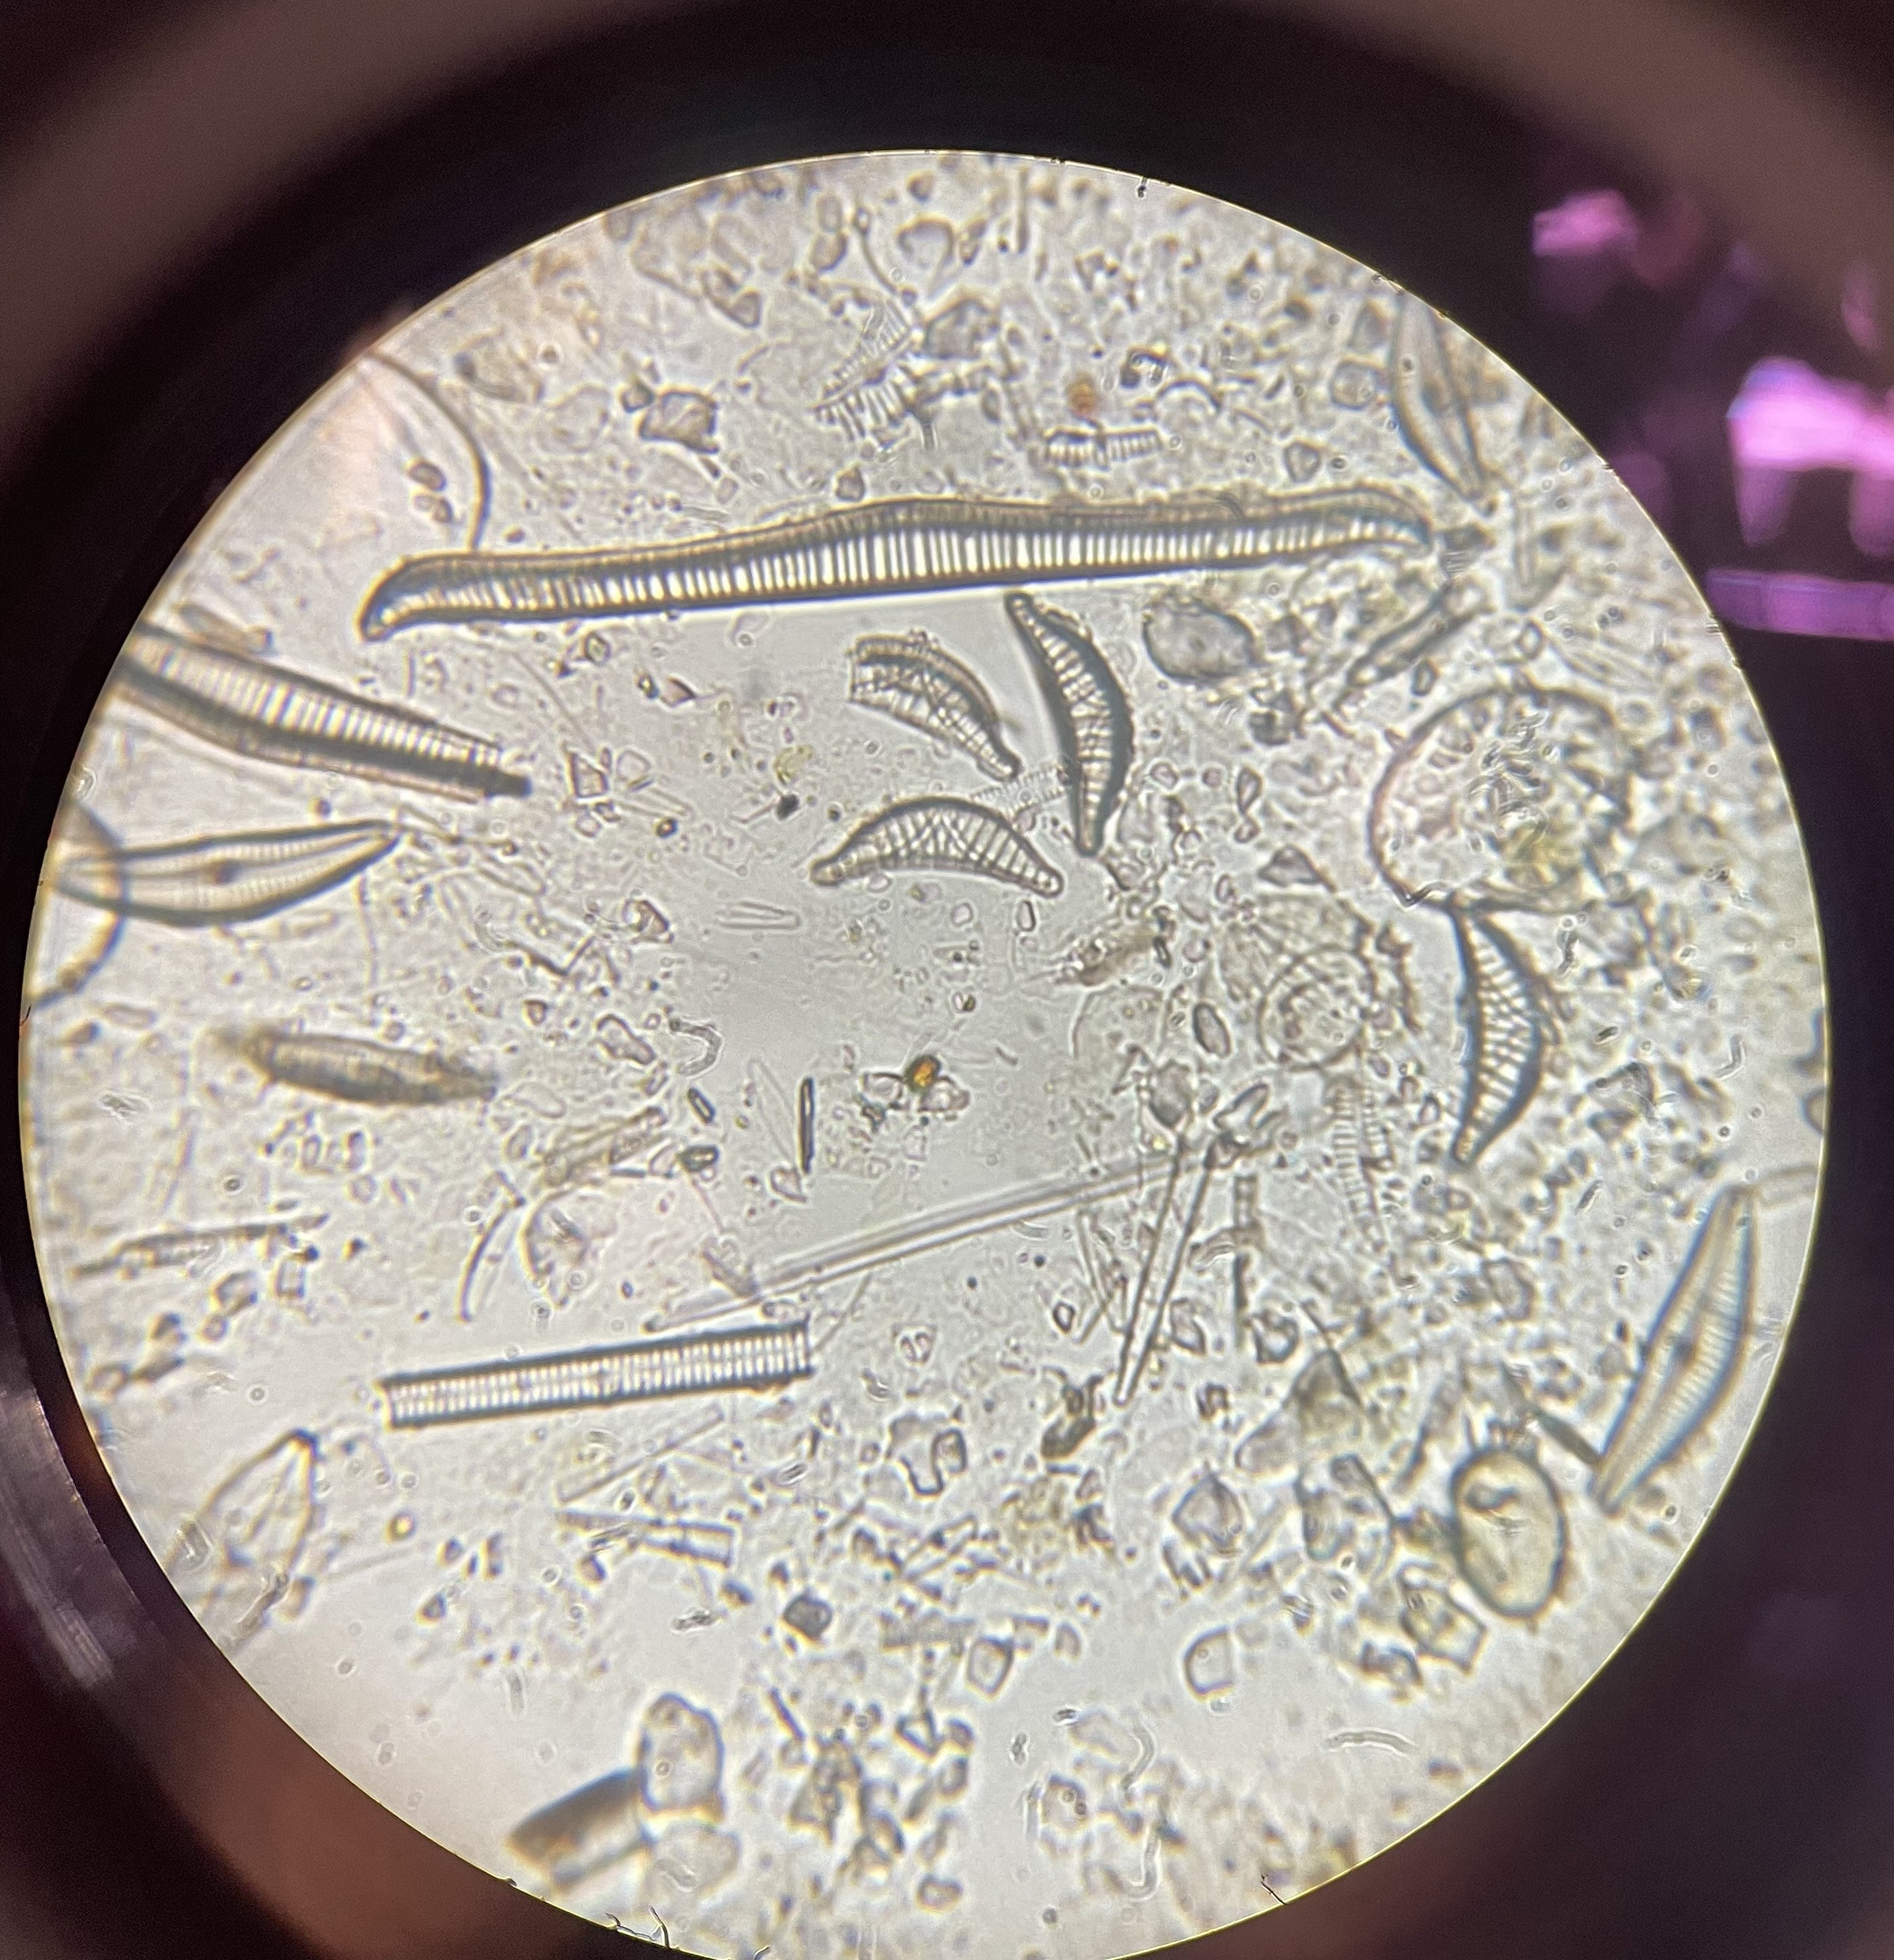 diatoms, algae